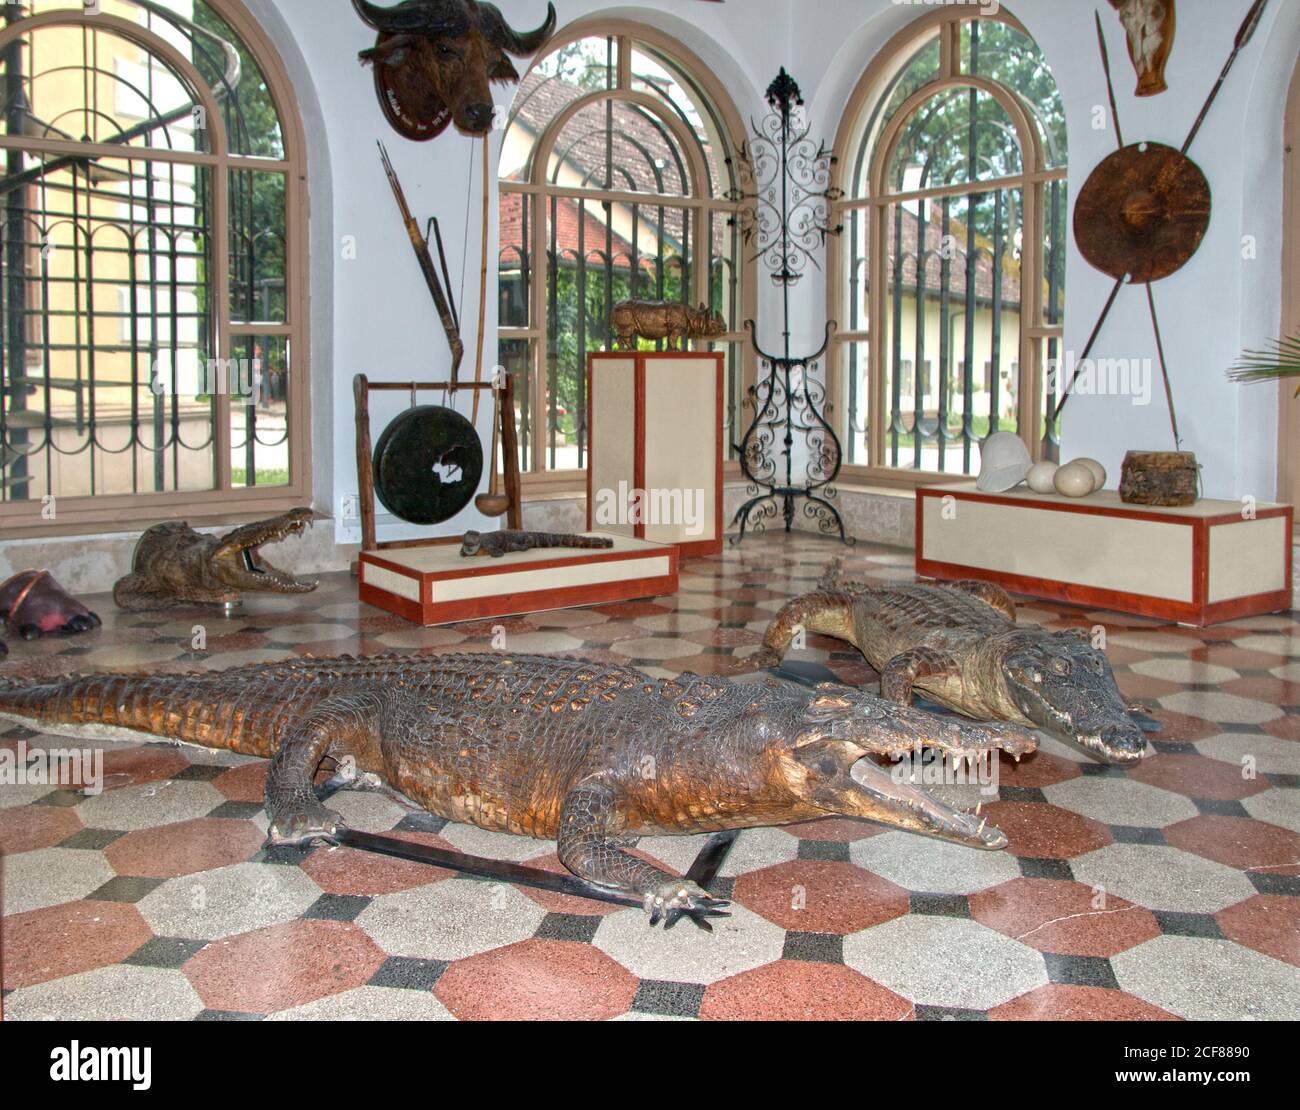 Reptiles peligrosos con dientes puntiagudos y afilados en el conservatorio del antiguo castillo de caza del conde Gyula Andrássy. Foto de stock